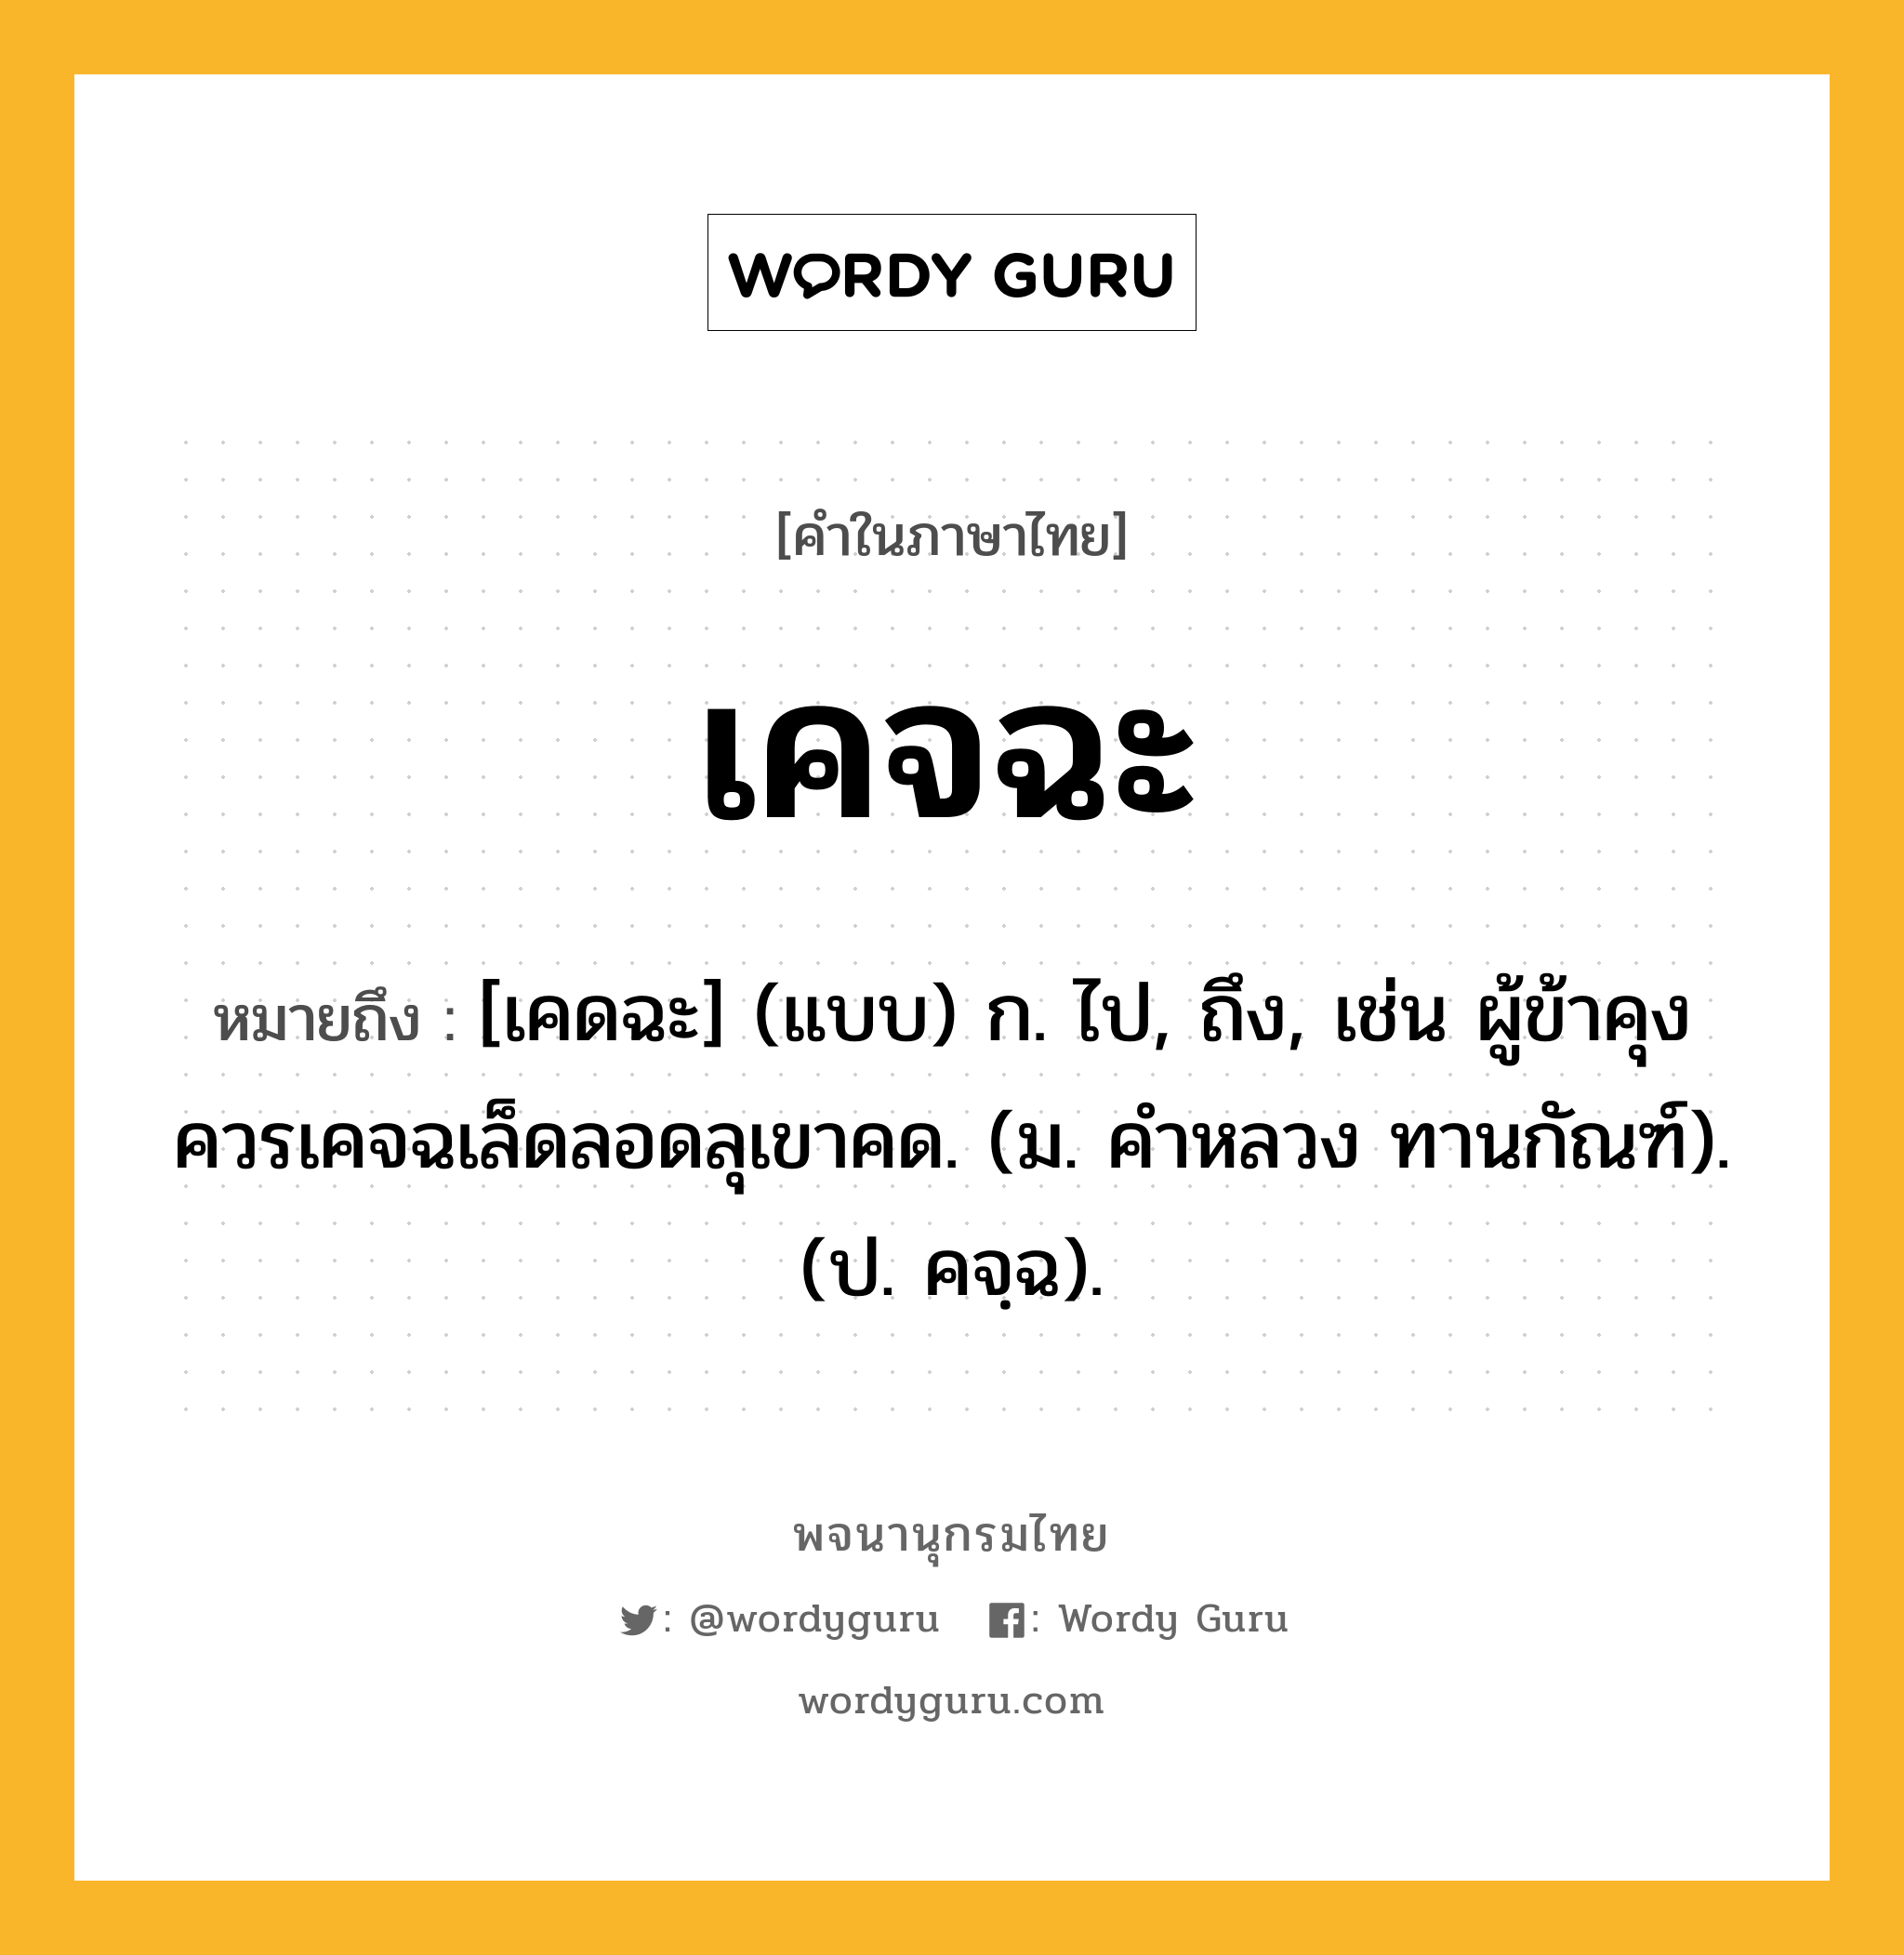 เคจฉะ หมายถึงอะไร?, คำในภาษาไทย เคจฉะ หมายถึง [เคดฉะ] (แบบ) ก. ไป, ถึง, เช่น ผู้ข้าคุงควรเคจฉเล็ดลอดลุเขาคด. (ม. คําหลวง ทานกัณฑ์). (ป. คจฺฉ).